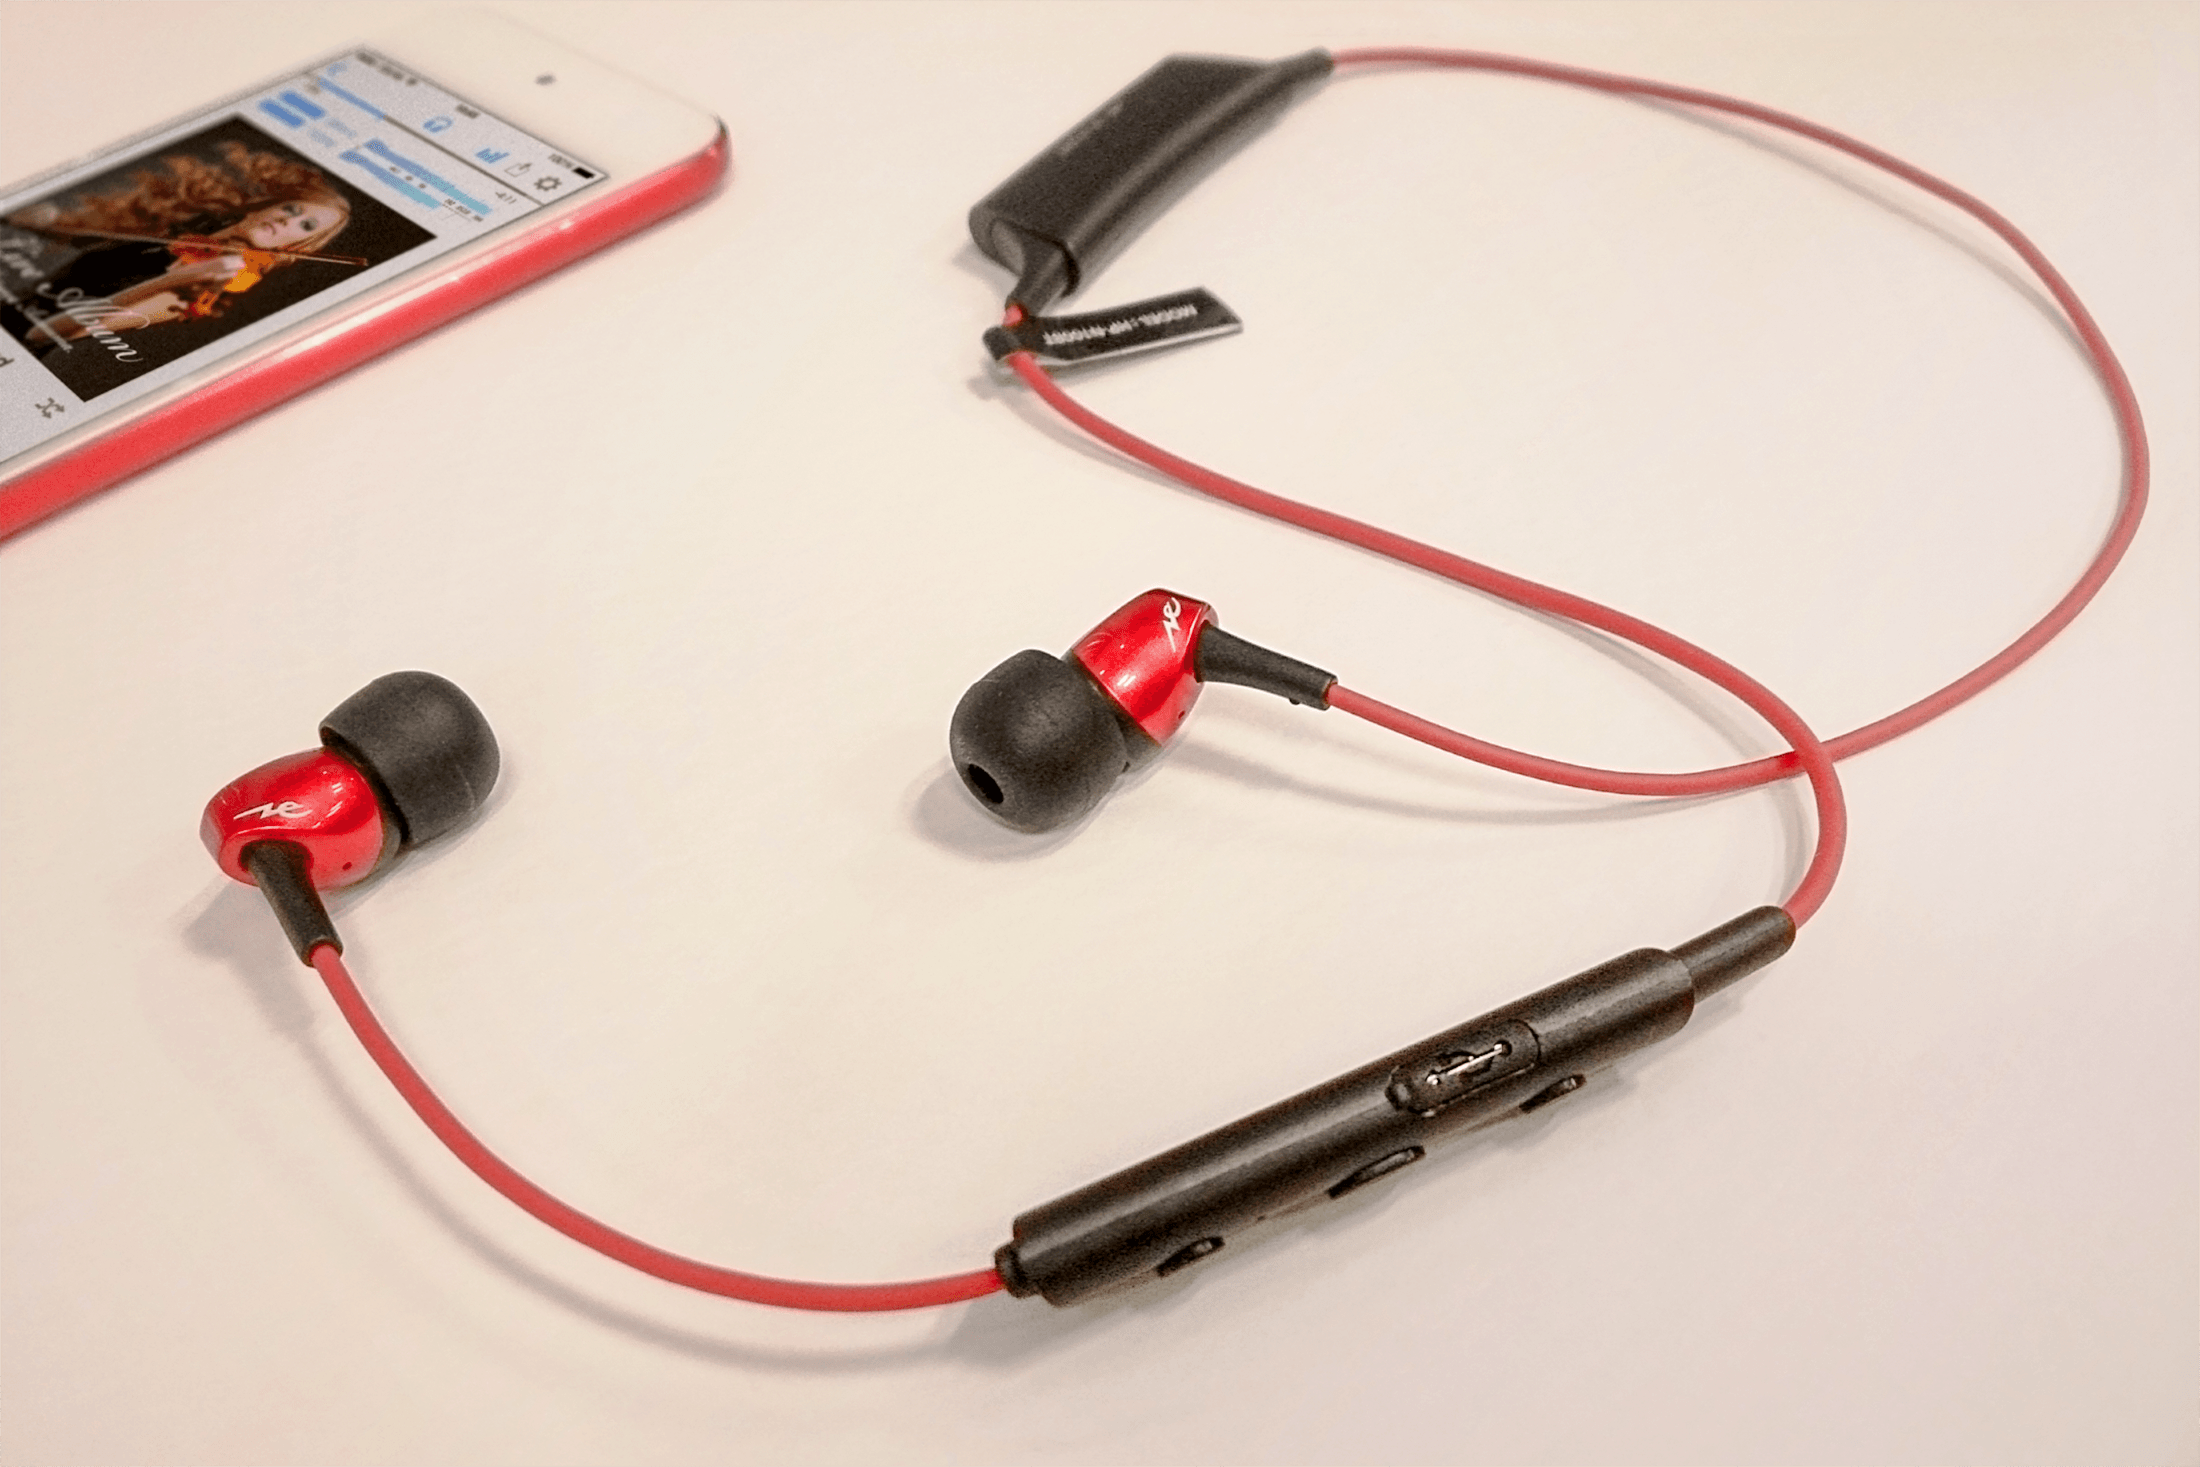 イヤホンの断線防止方法 Iphoneで音楽を聴く方へ断線の原因と予防法を解説 Radius ラディウス株式会社 オーディオ デジタル音響機器 Lightning製品メーカー